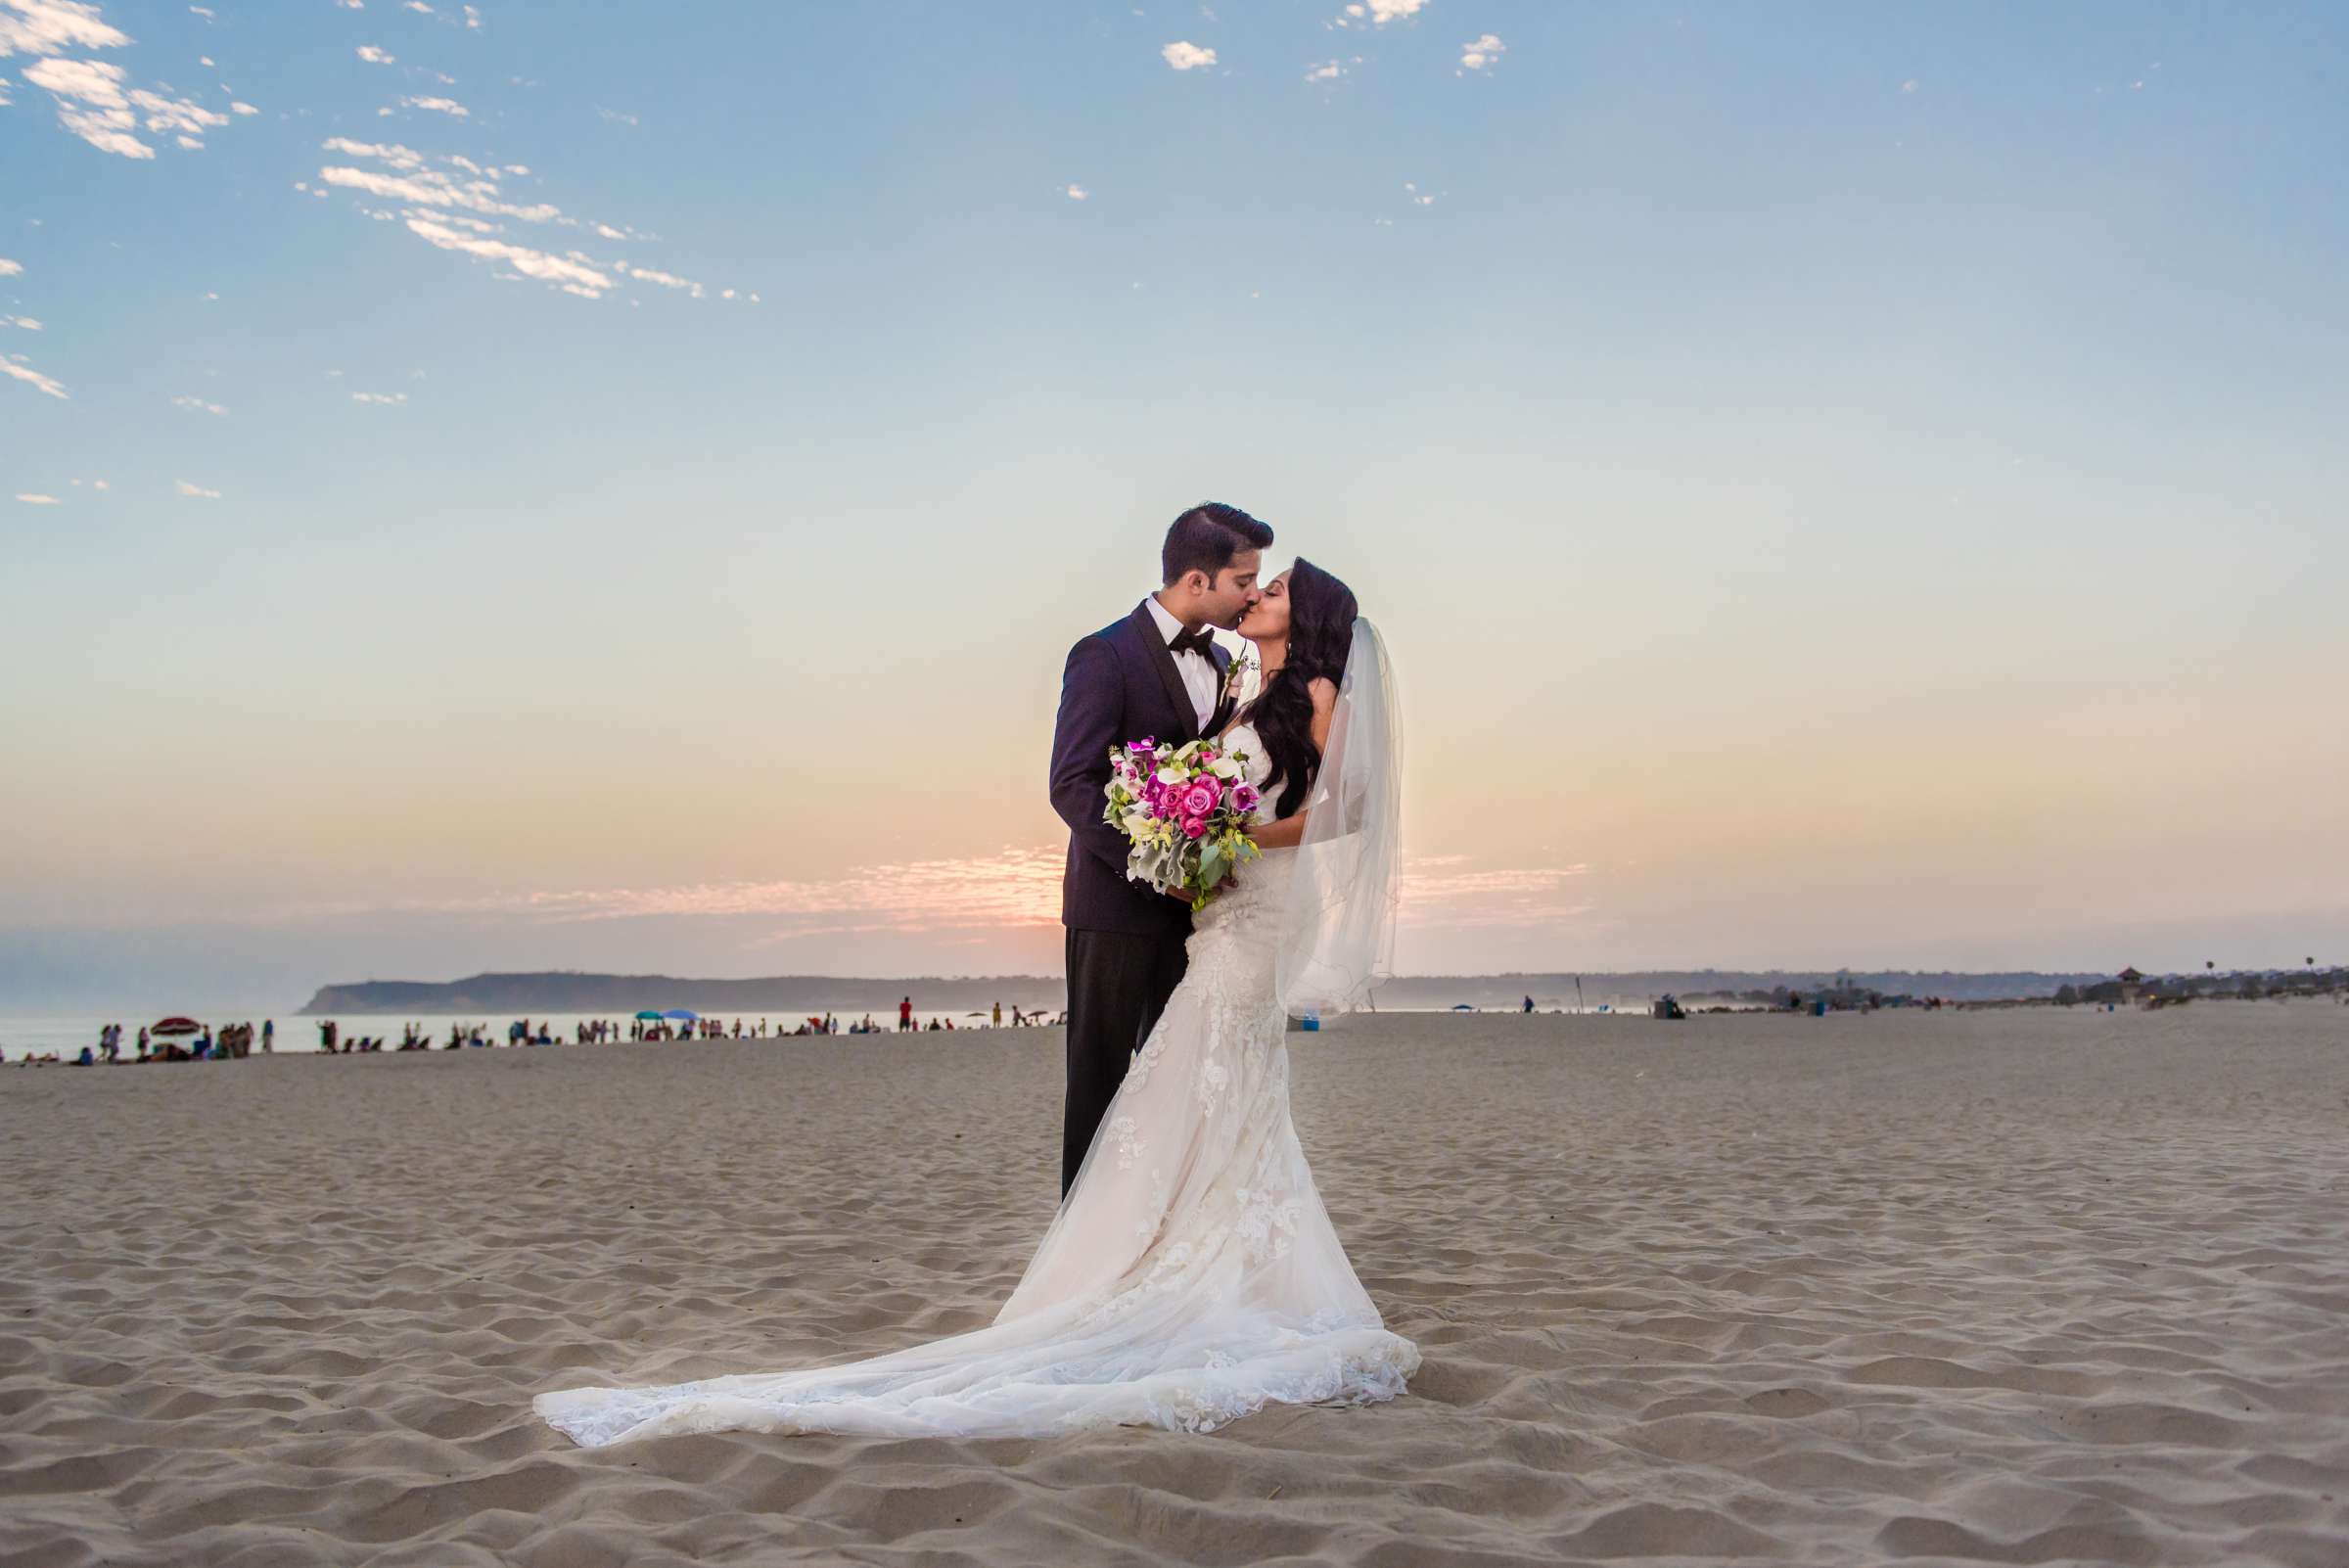 Hotel Del Coronado Wedding, Sabrina and Gehaan Wedding Photo #409139 by True Photography